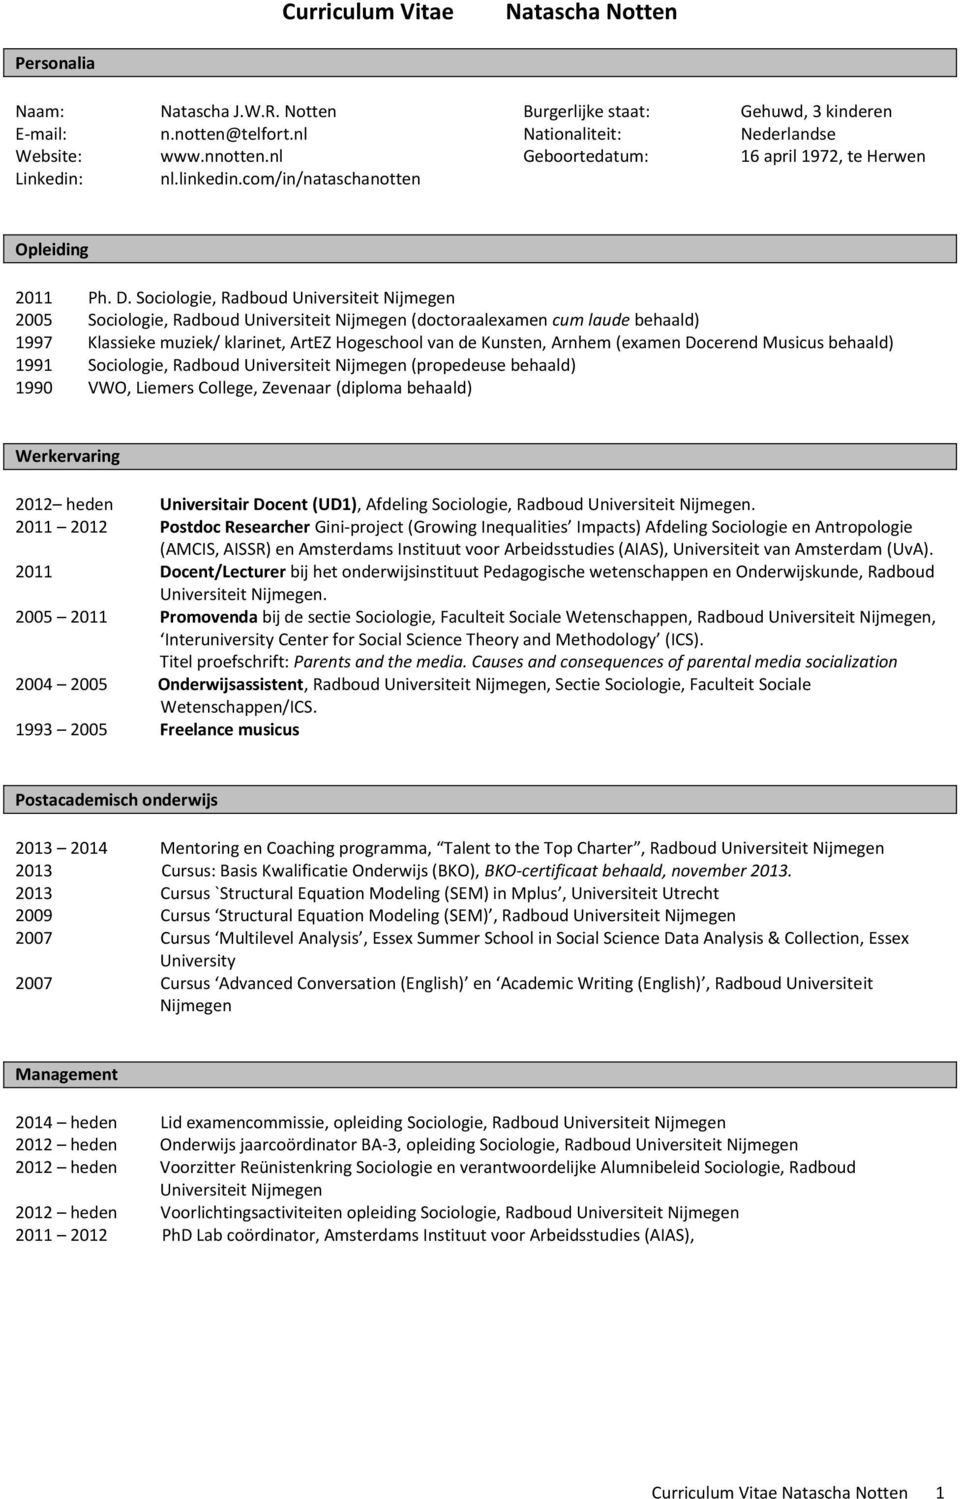 Sociologie, Radboud Universiteit Nijmegen 2005 Sociologie, Radboud Universiteit Nijmegen (doctoraalexamen cum laude behaald) 1997 Klassieke muziek/ klarinet, ArtEZ Hogeschool van de Kunsten, Arnhem